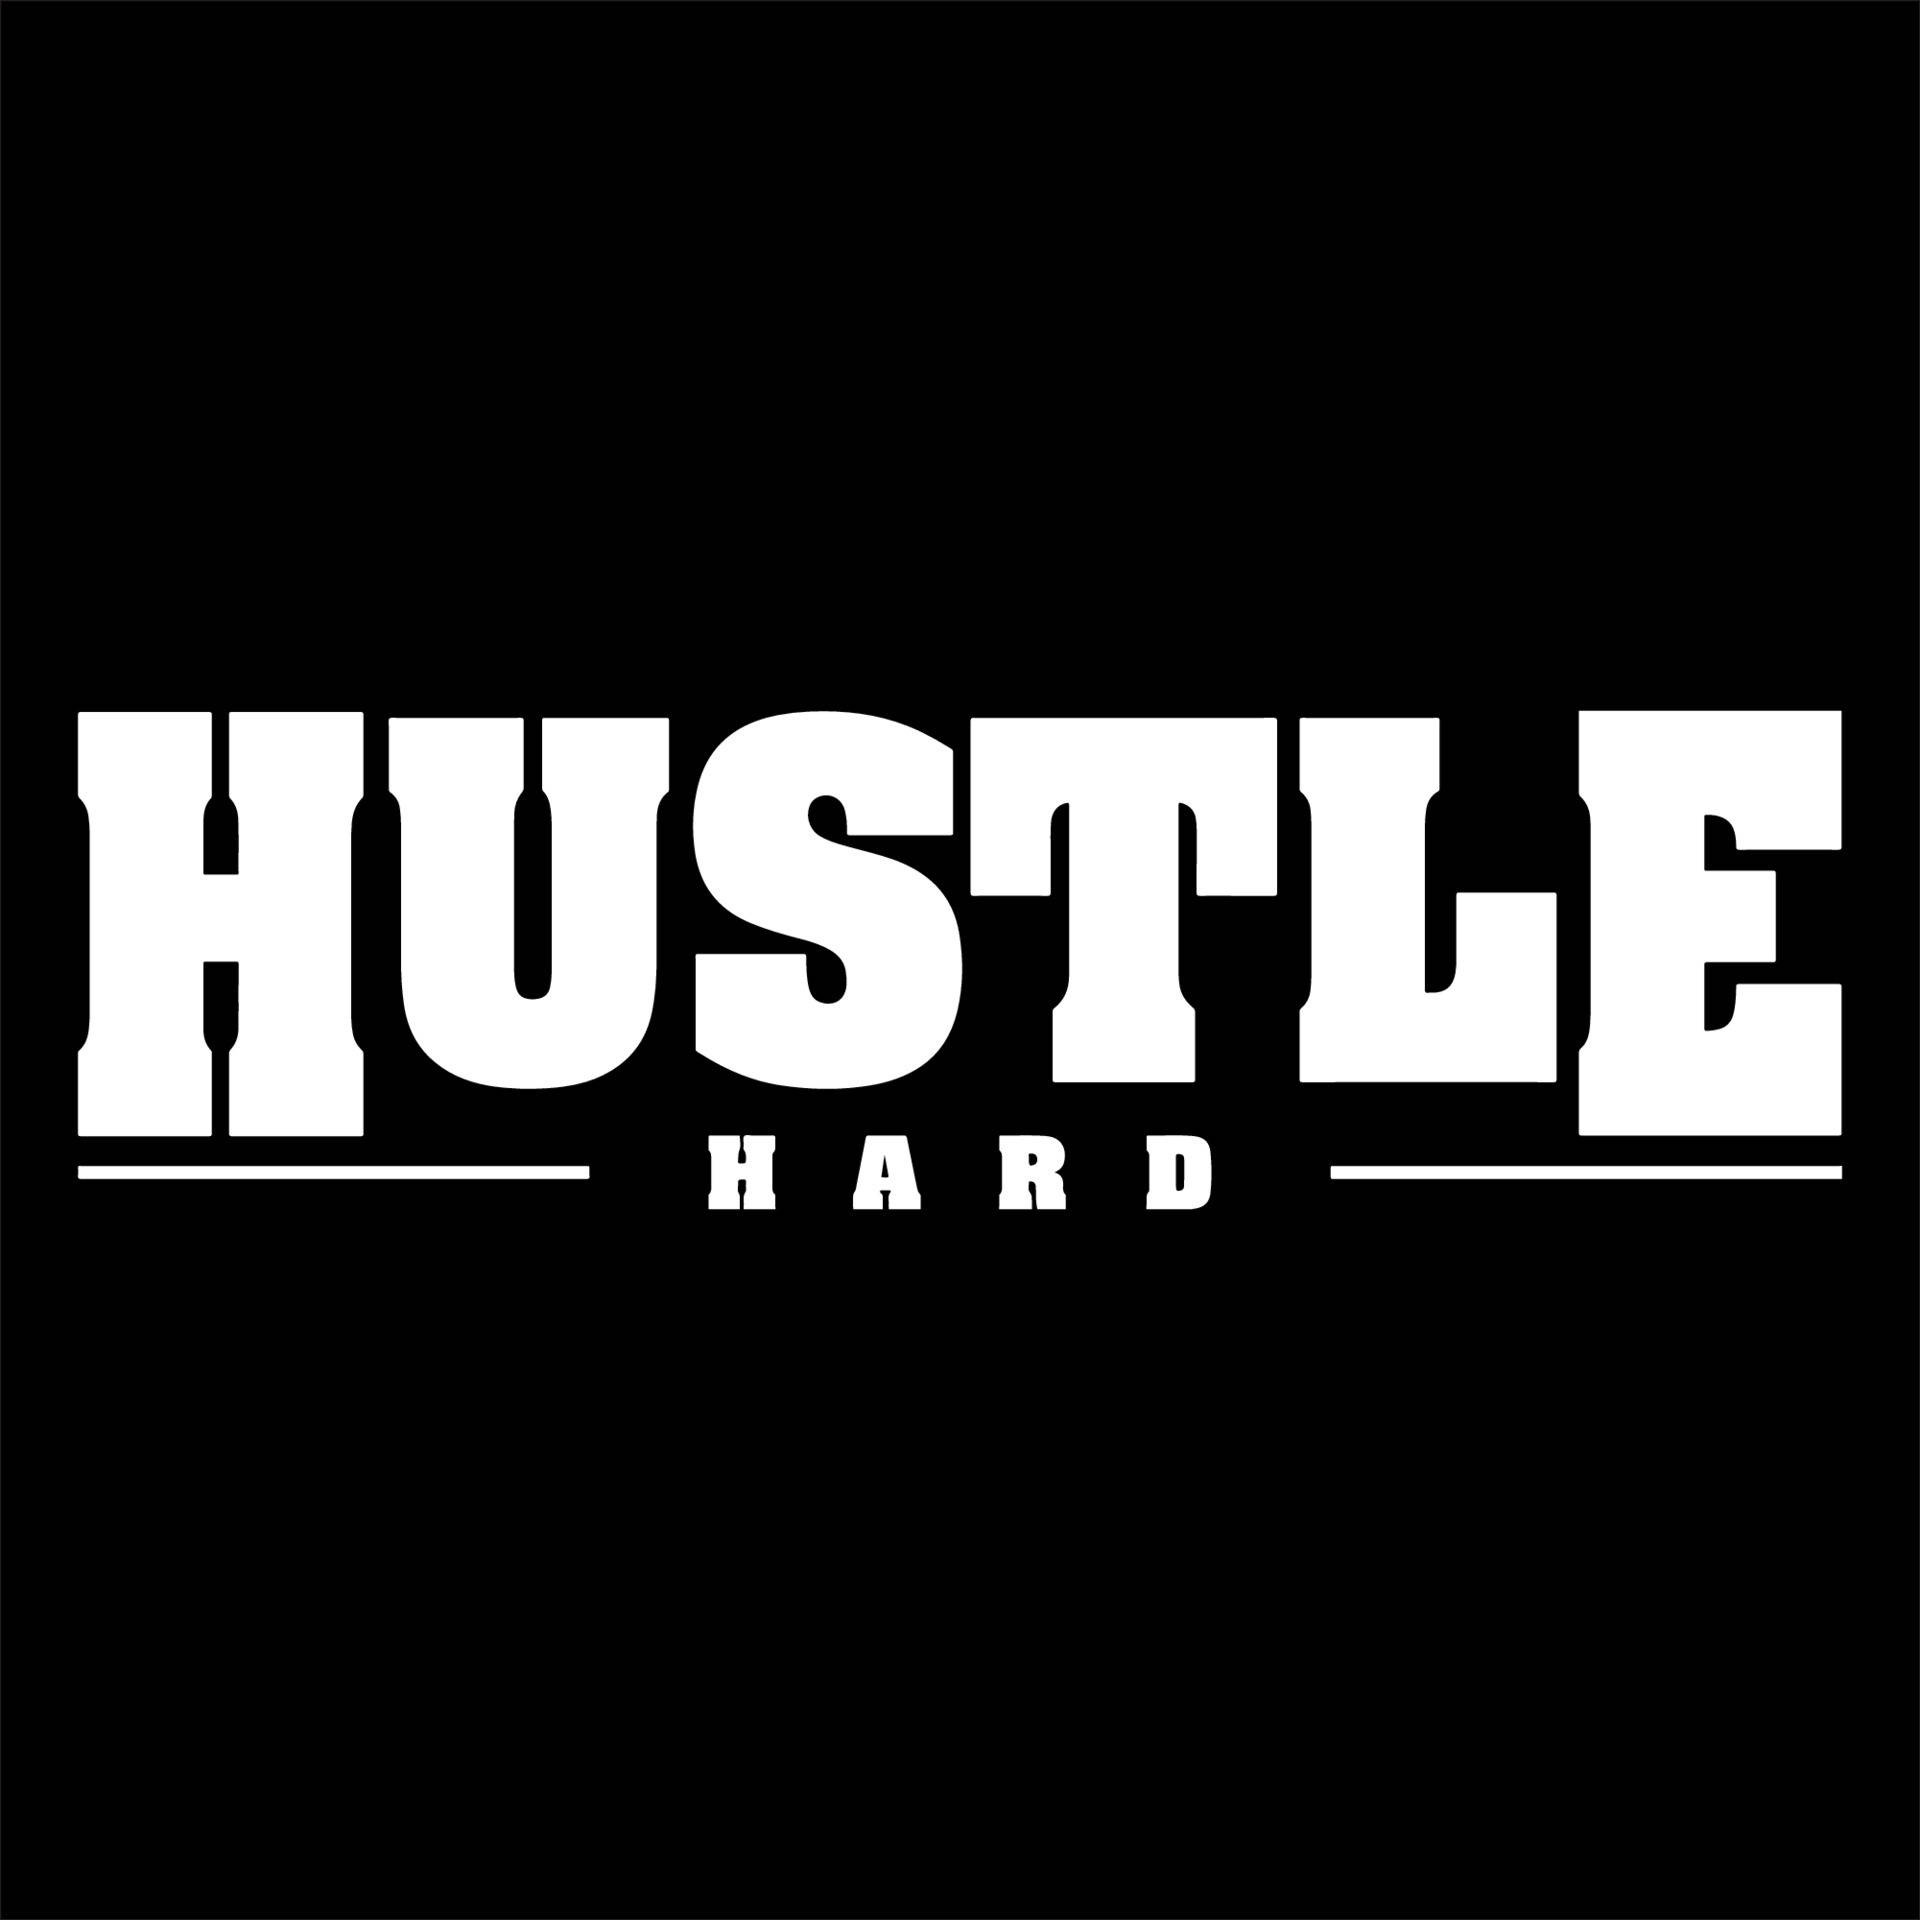 Hustlehard-logo Auf Einem Schwarzen Hintergrund Wallpaper